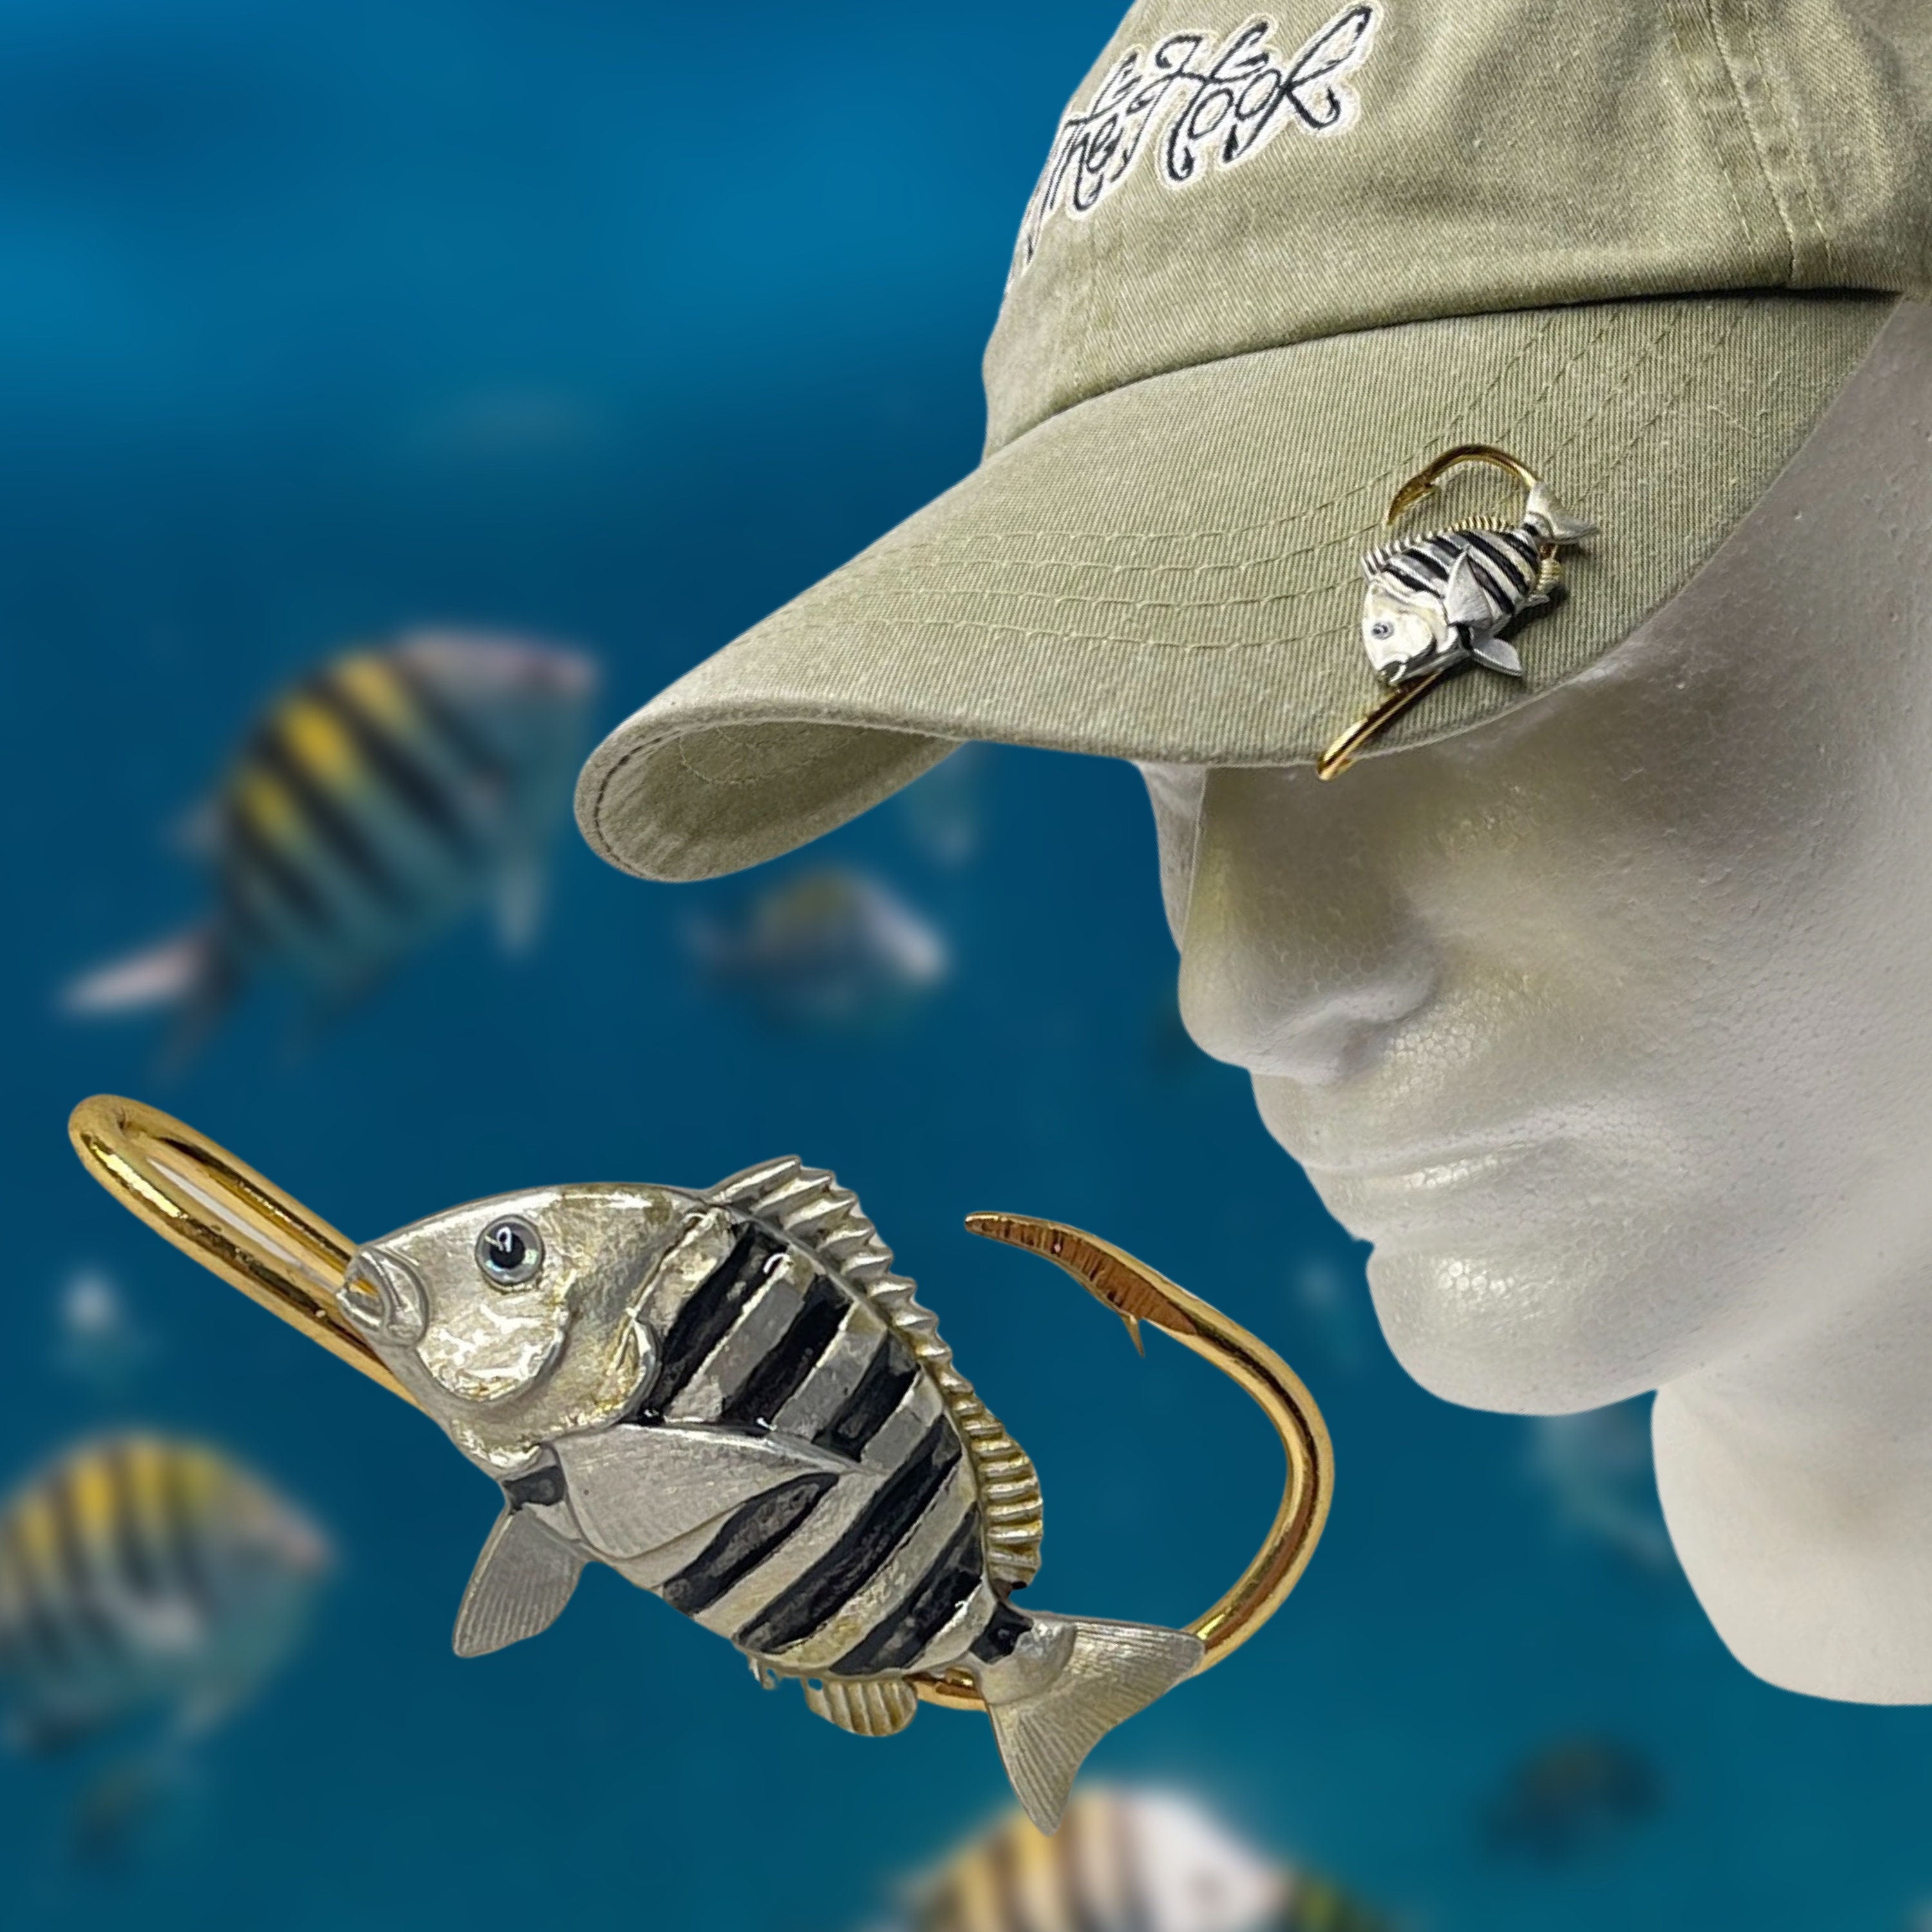 Sheepshead HOOKIT© Fishing Hook Hat Clip Fishing .. Fishing